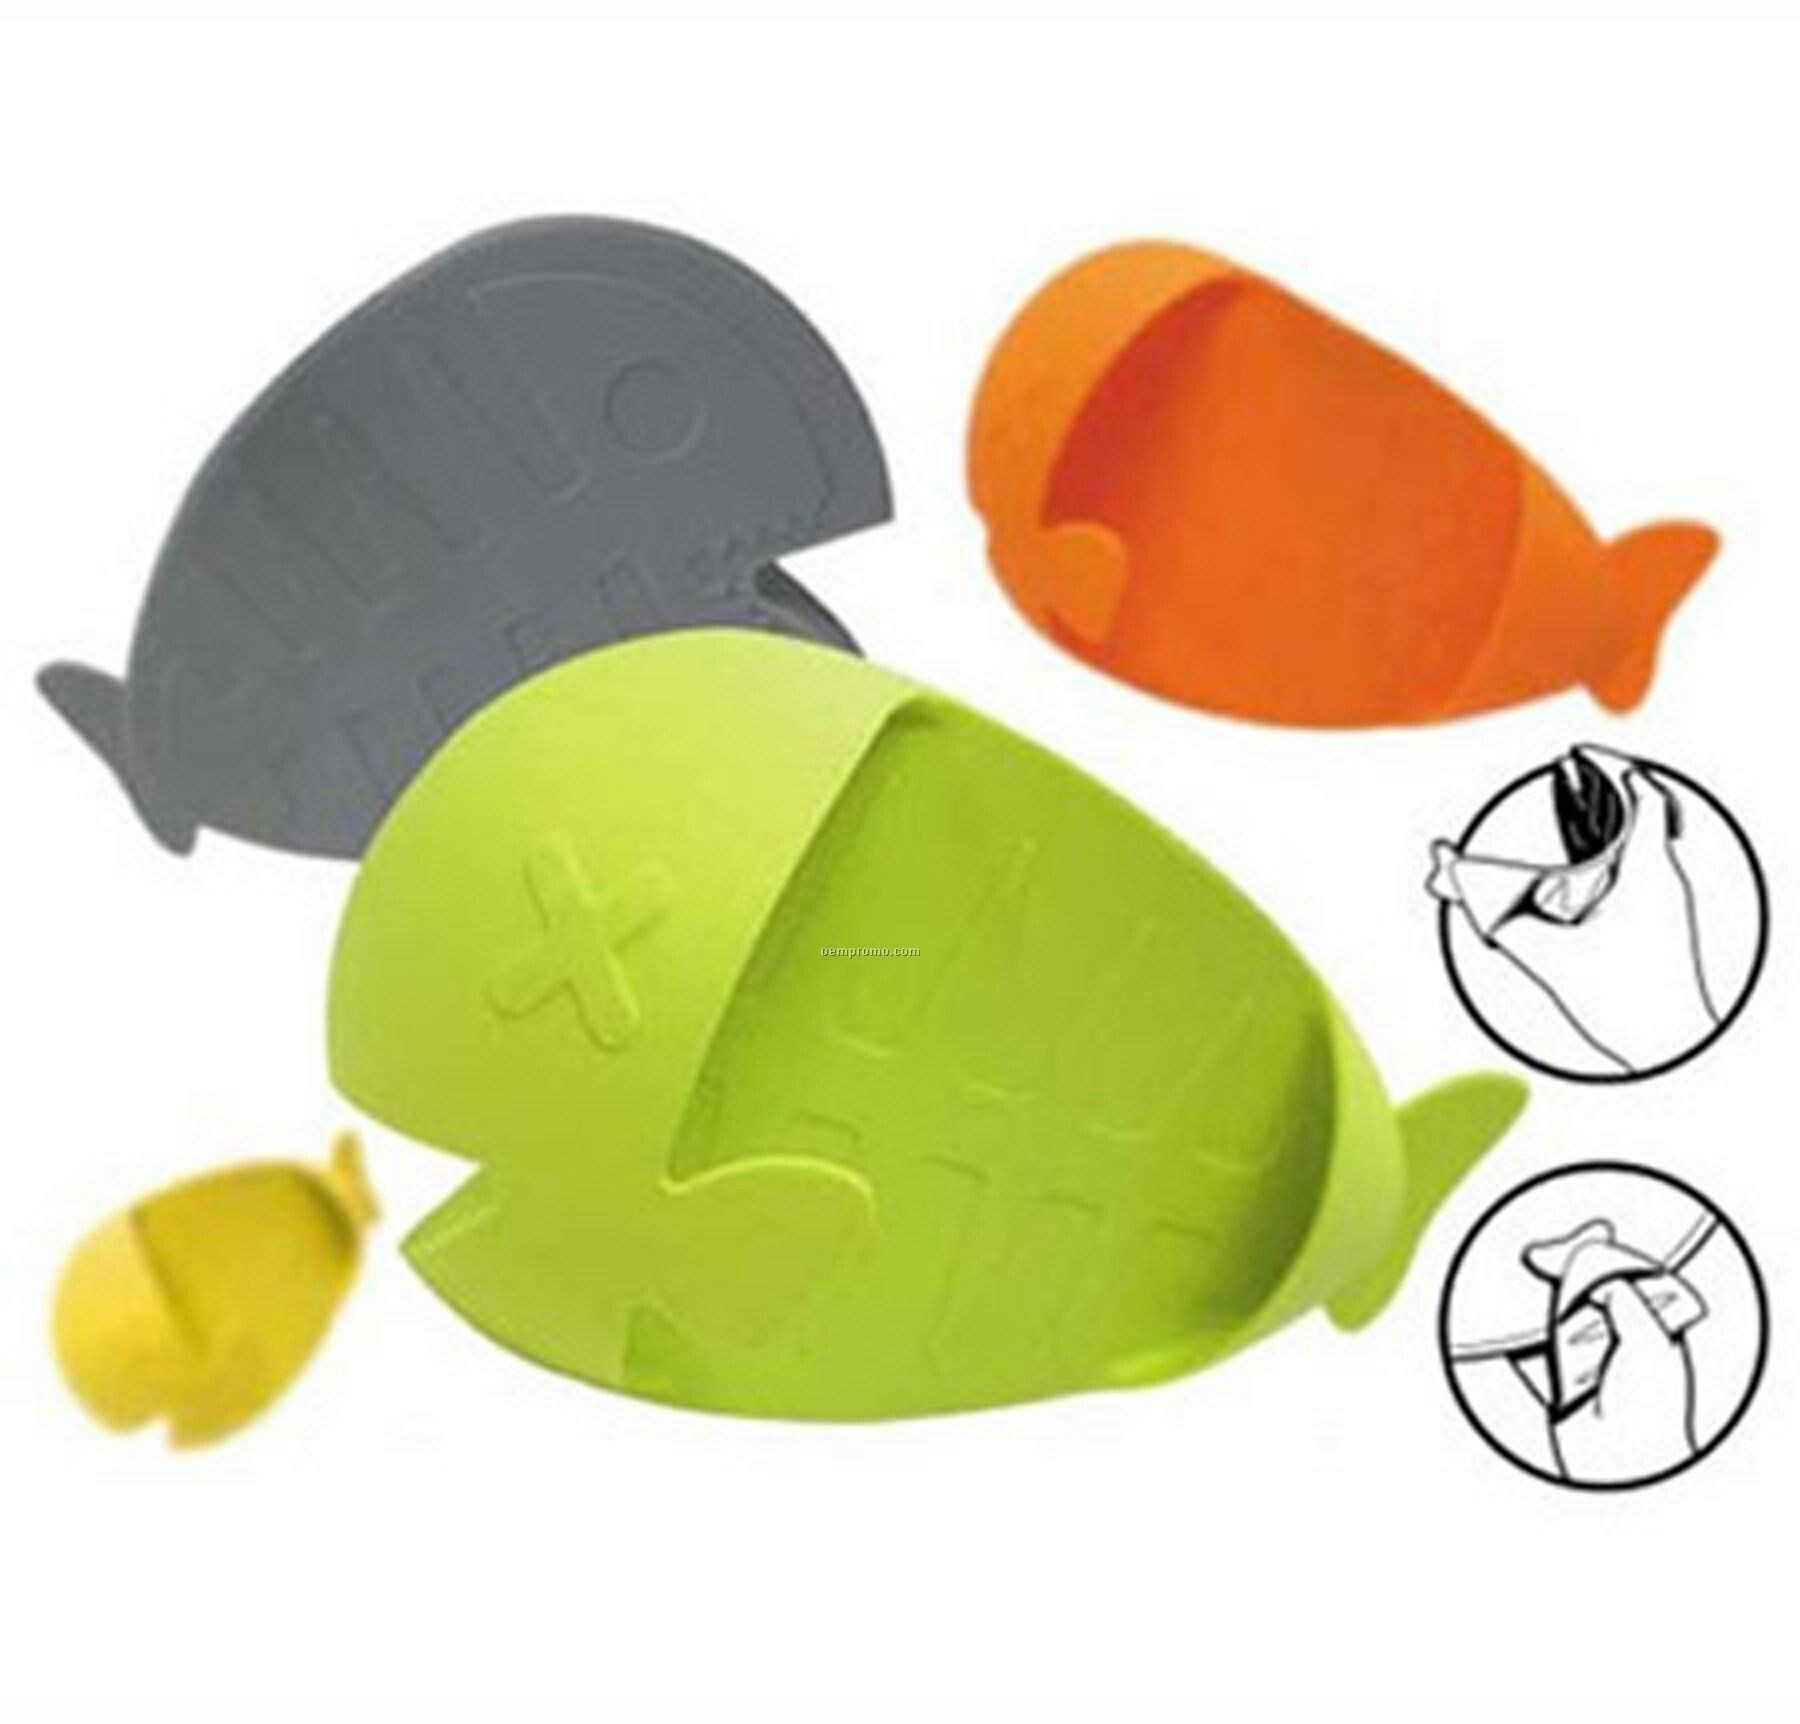 Fish Heat Insulation Glove